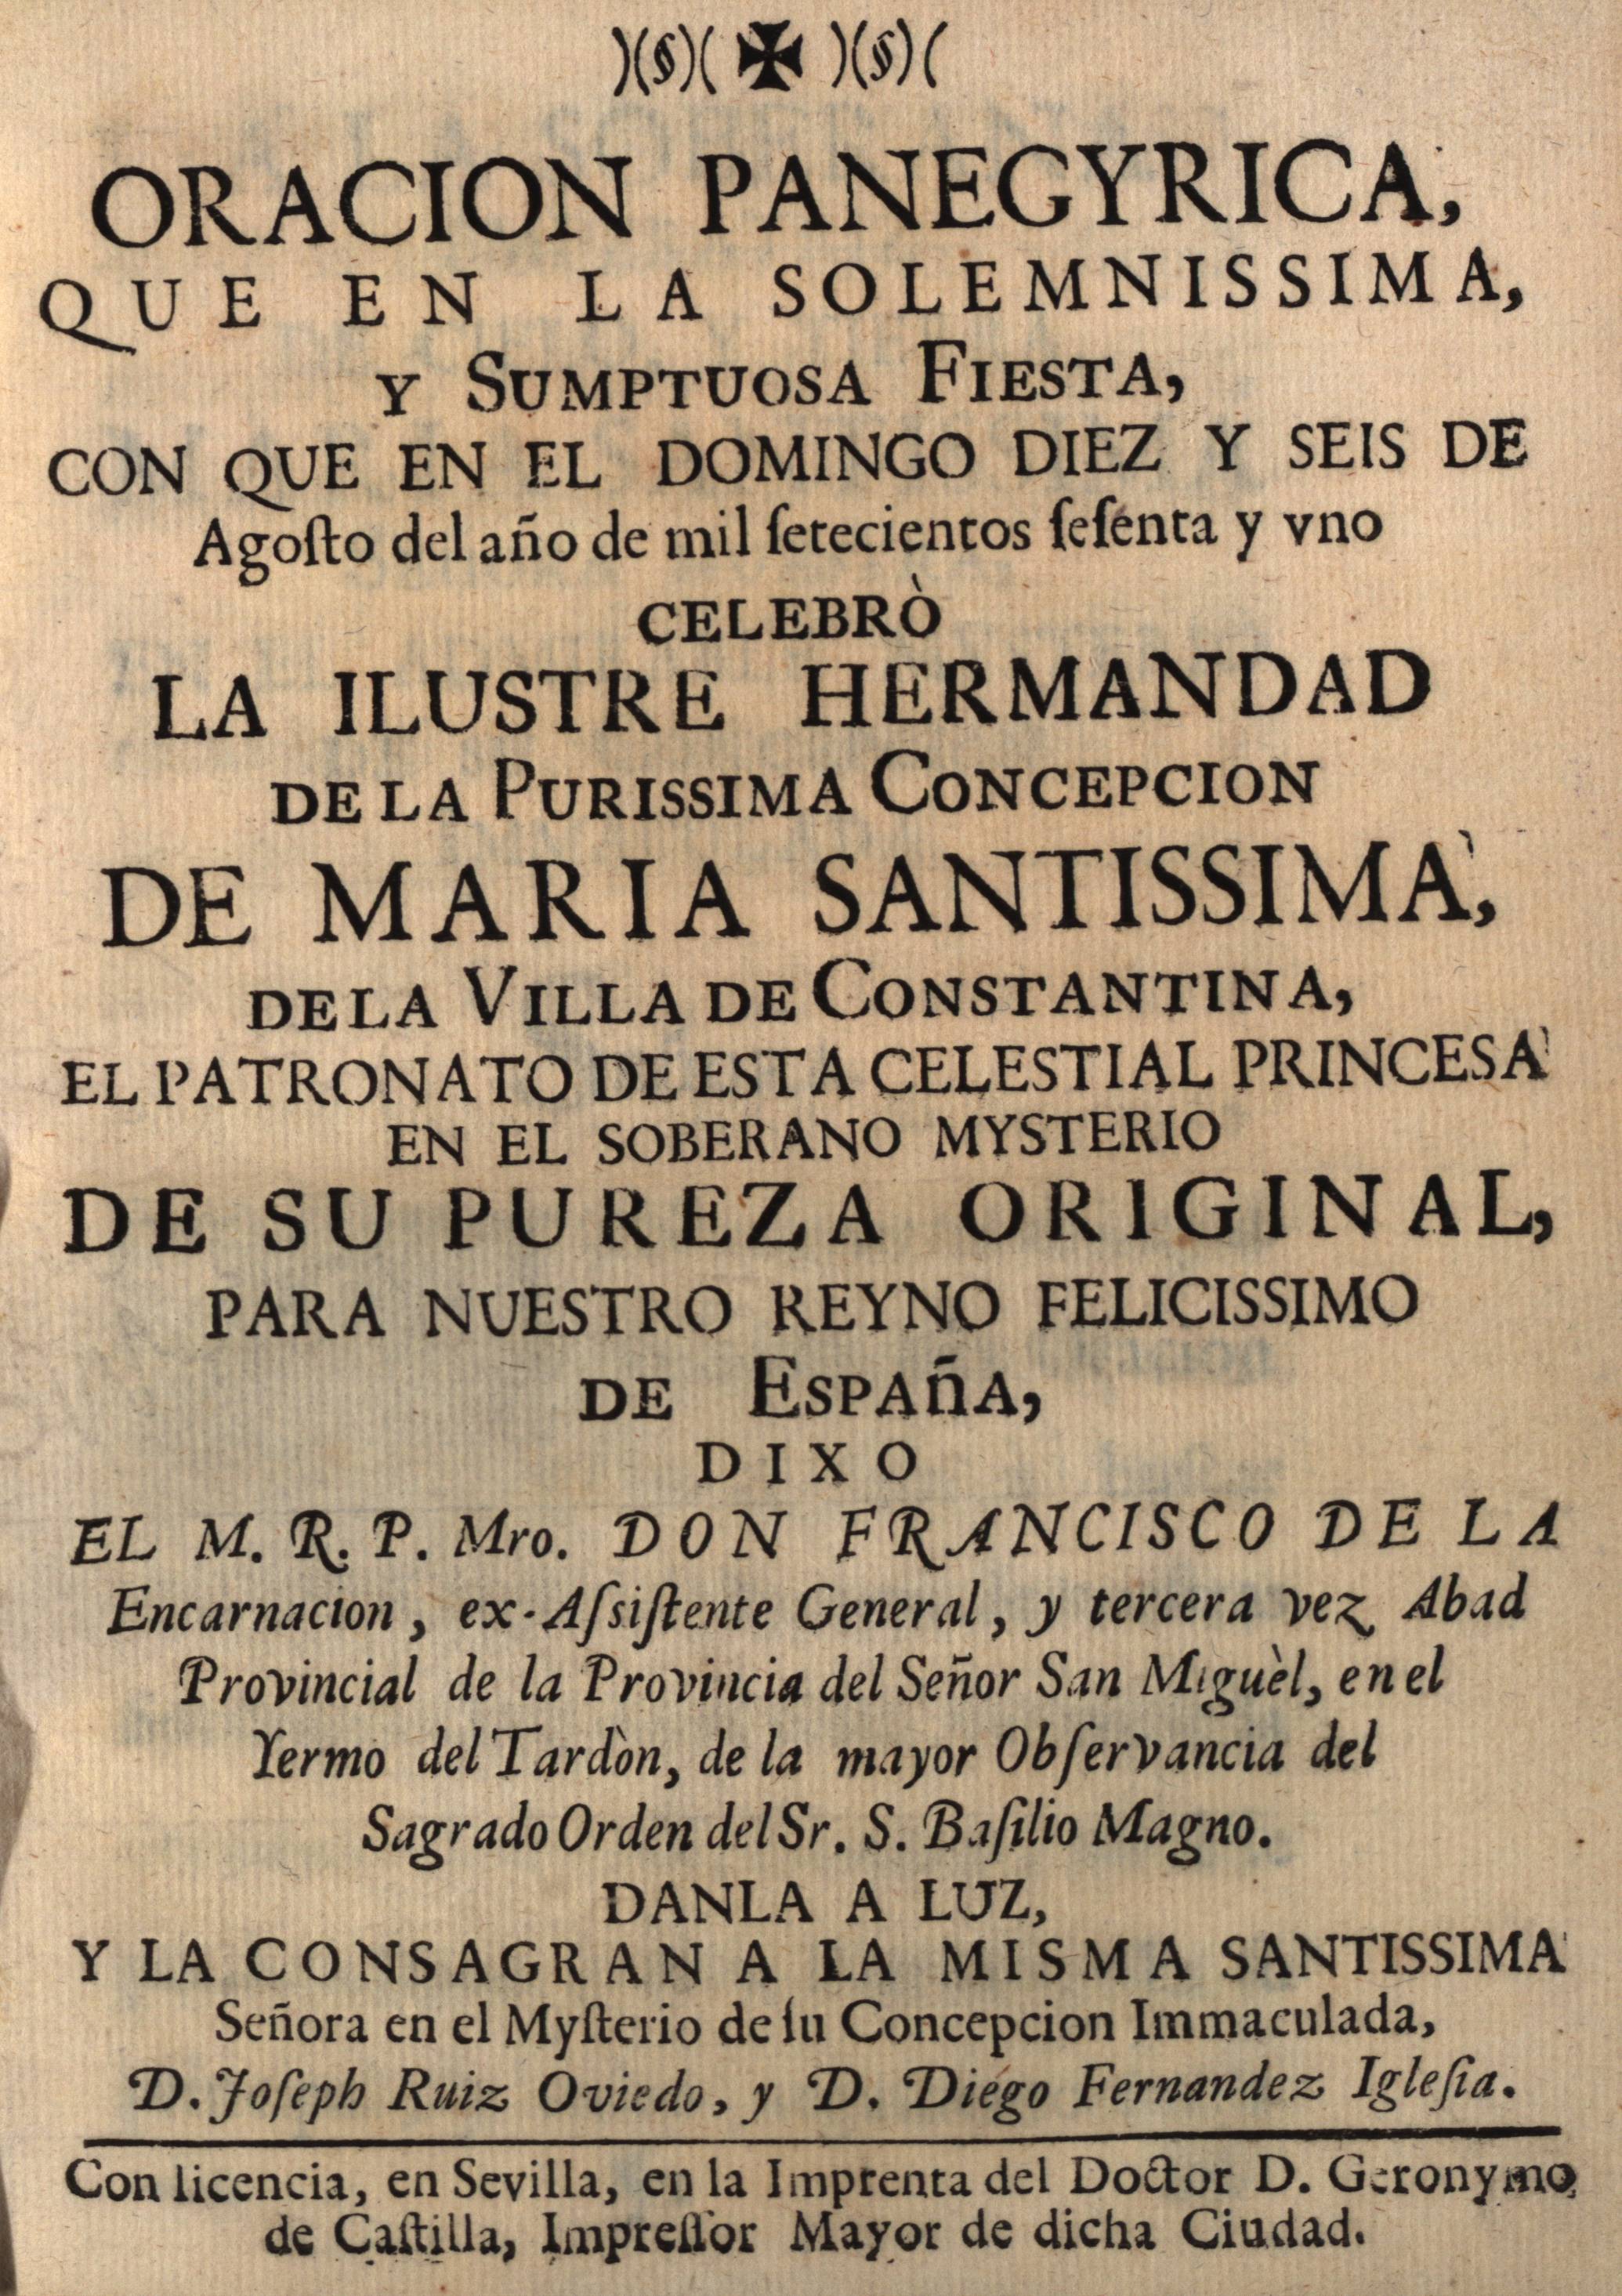 Oracion Panegyrica... Celebrò la Ilustre Hermandad de la Purissima Concepcion de Maria Santissima...